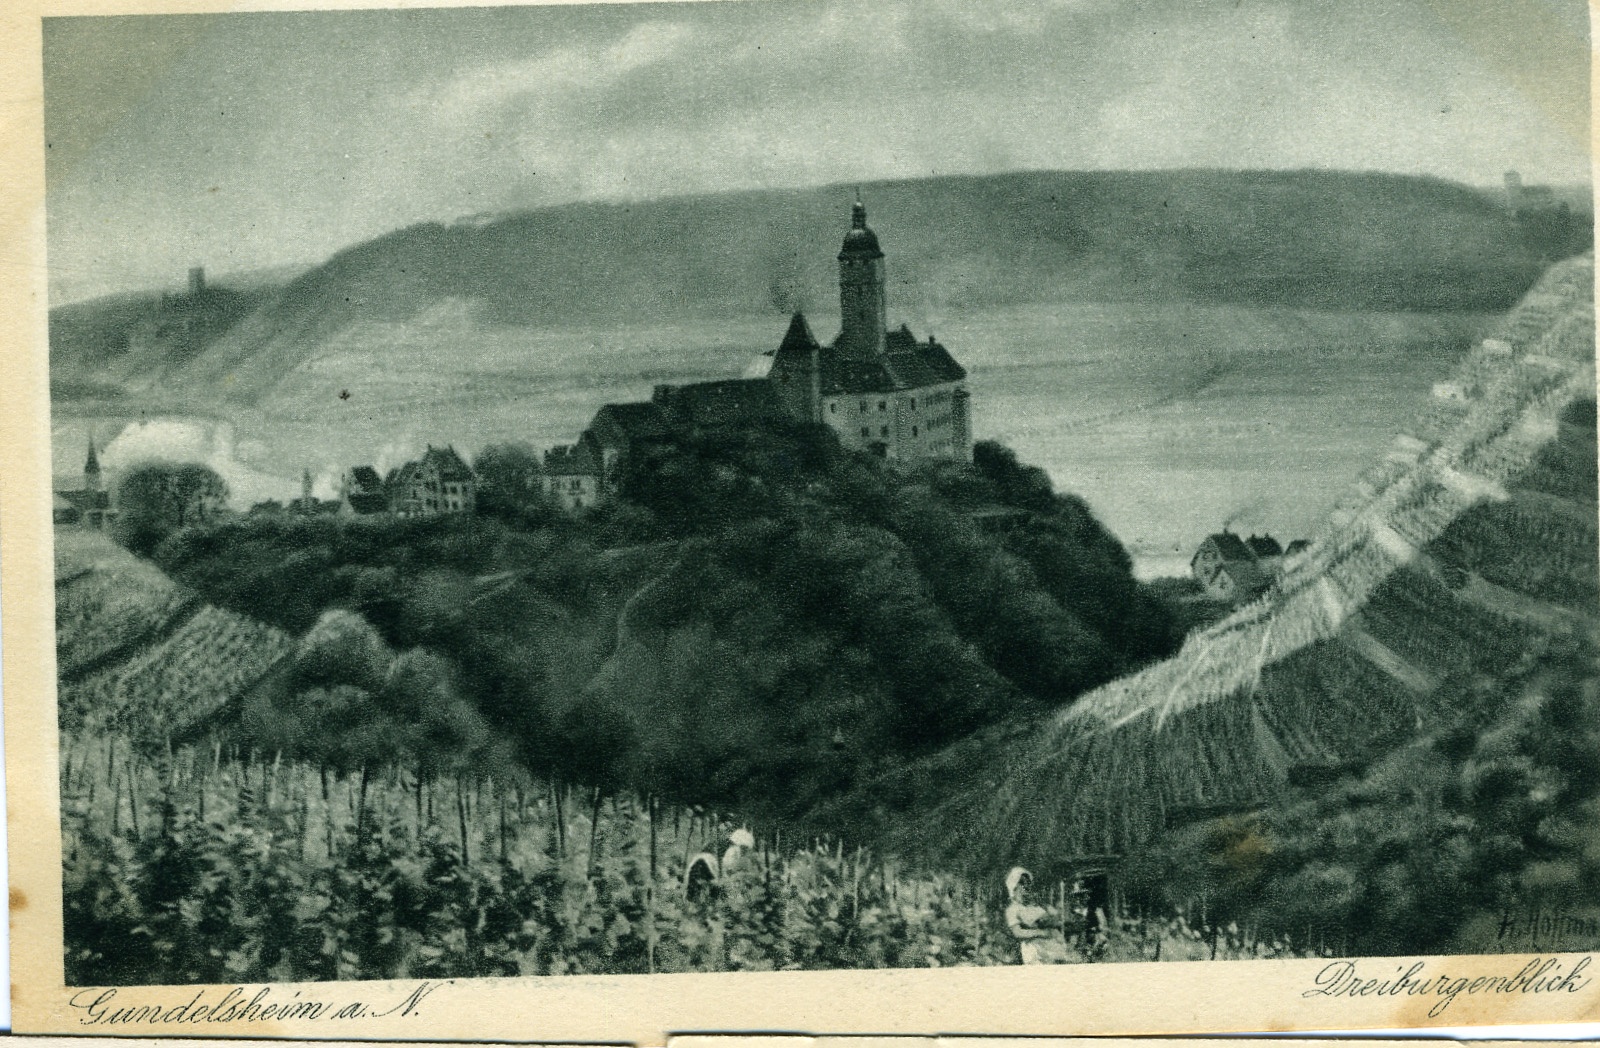 Postkarte Gundelsheim (Historisches Museum der Pfalz, Speyer CC BY)